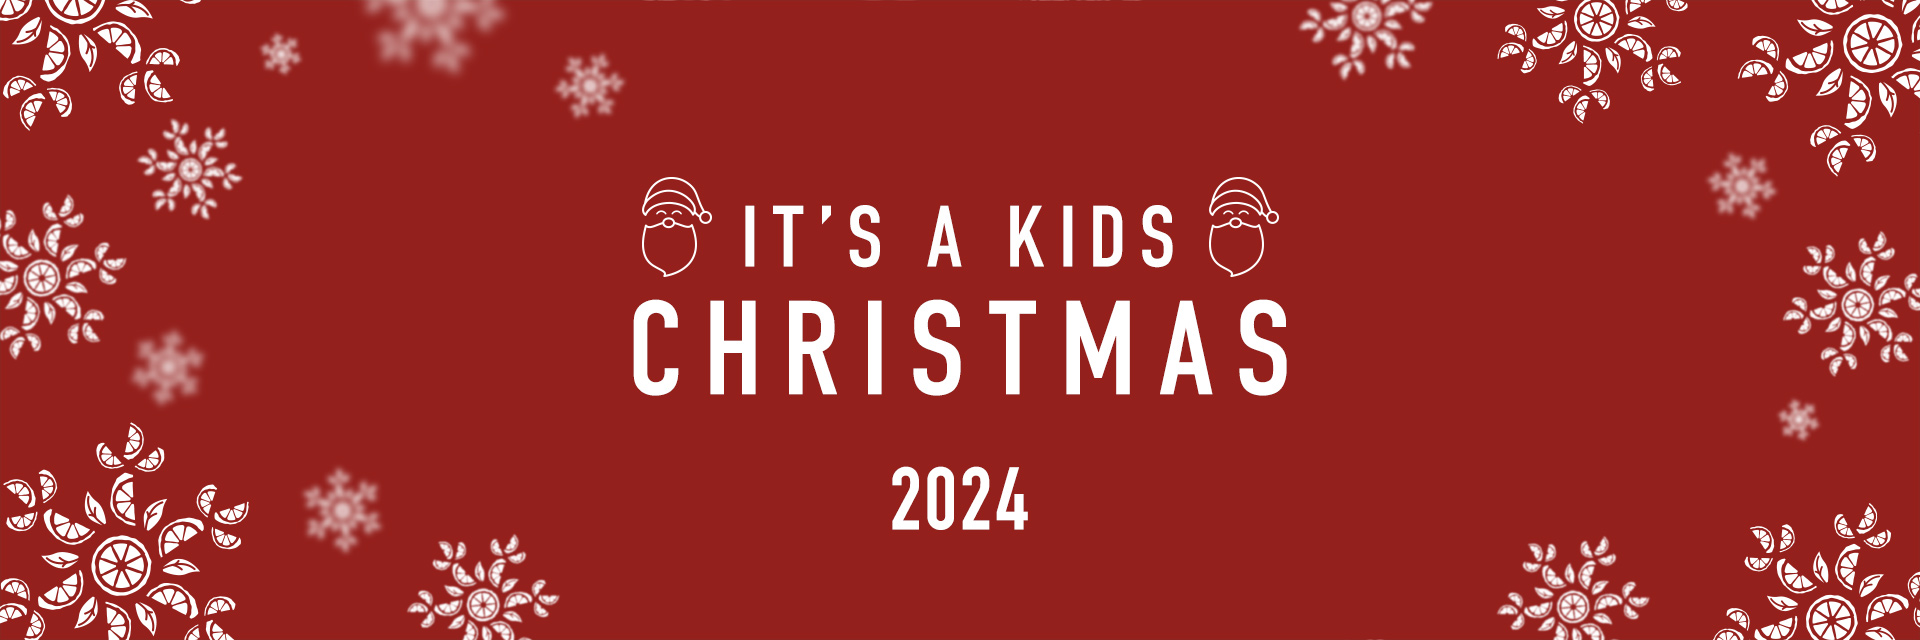 Kids Christmas Menu 2024 at Harvester Aylesbury